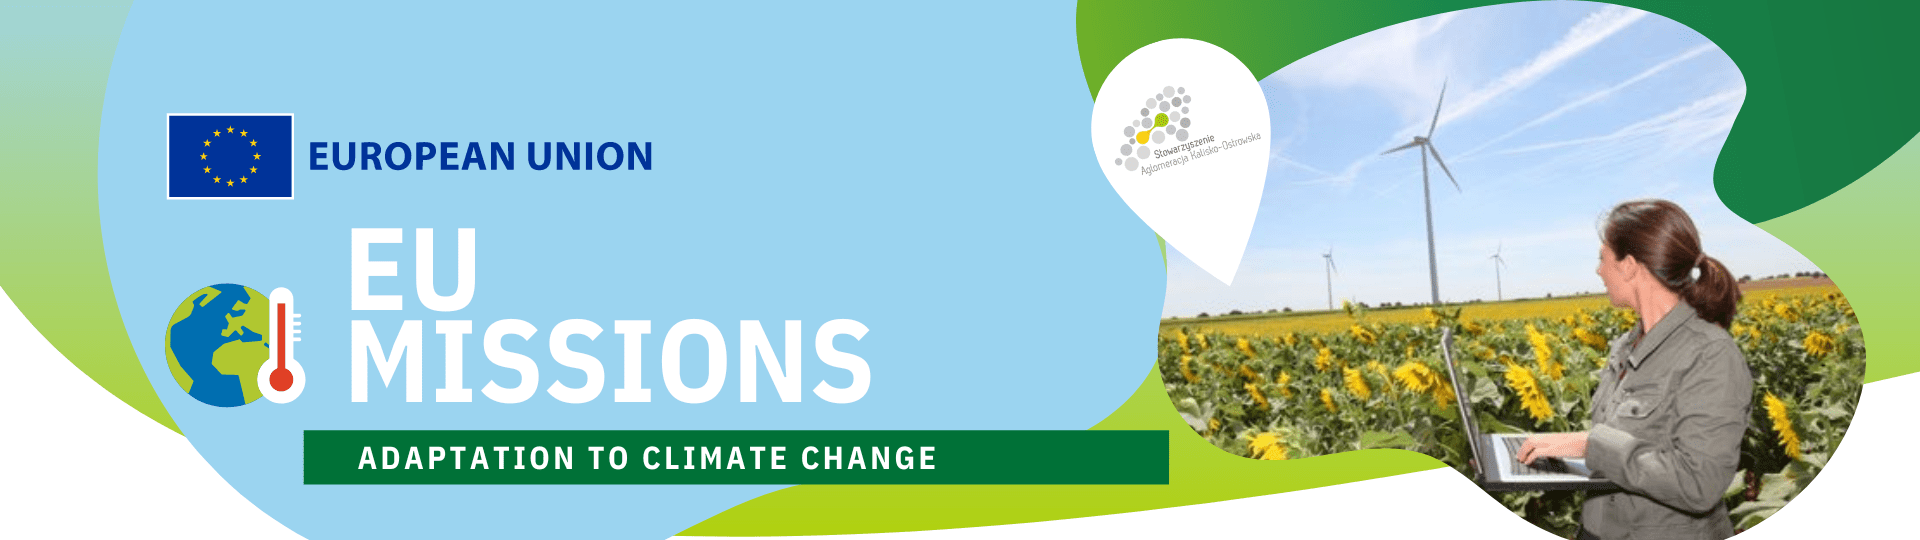 eu missions - Stowarzyszenie Aglomeracja Kalisko-Ostrowska została sygnatariuszami przy opracowaniu projektów w zakresie zmian klimatycznych.